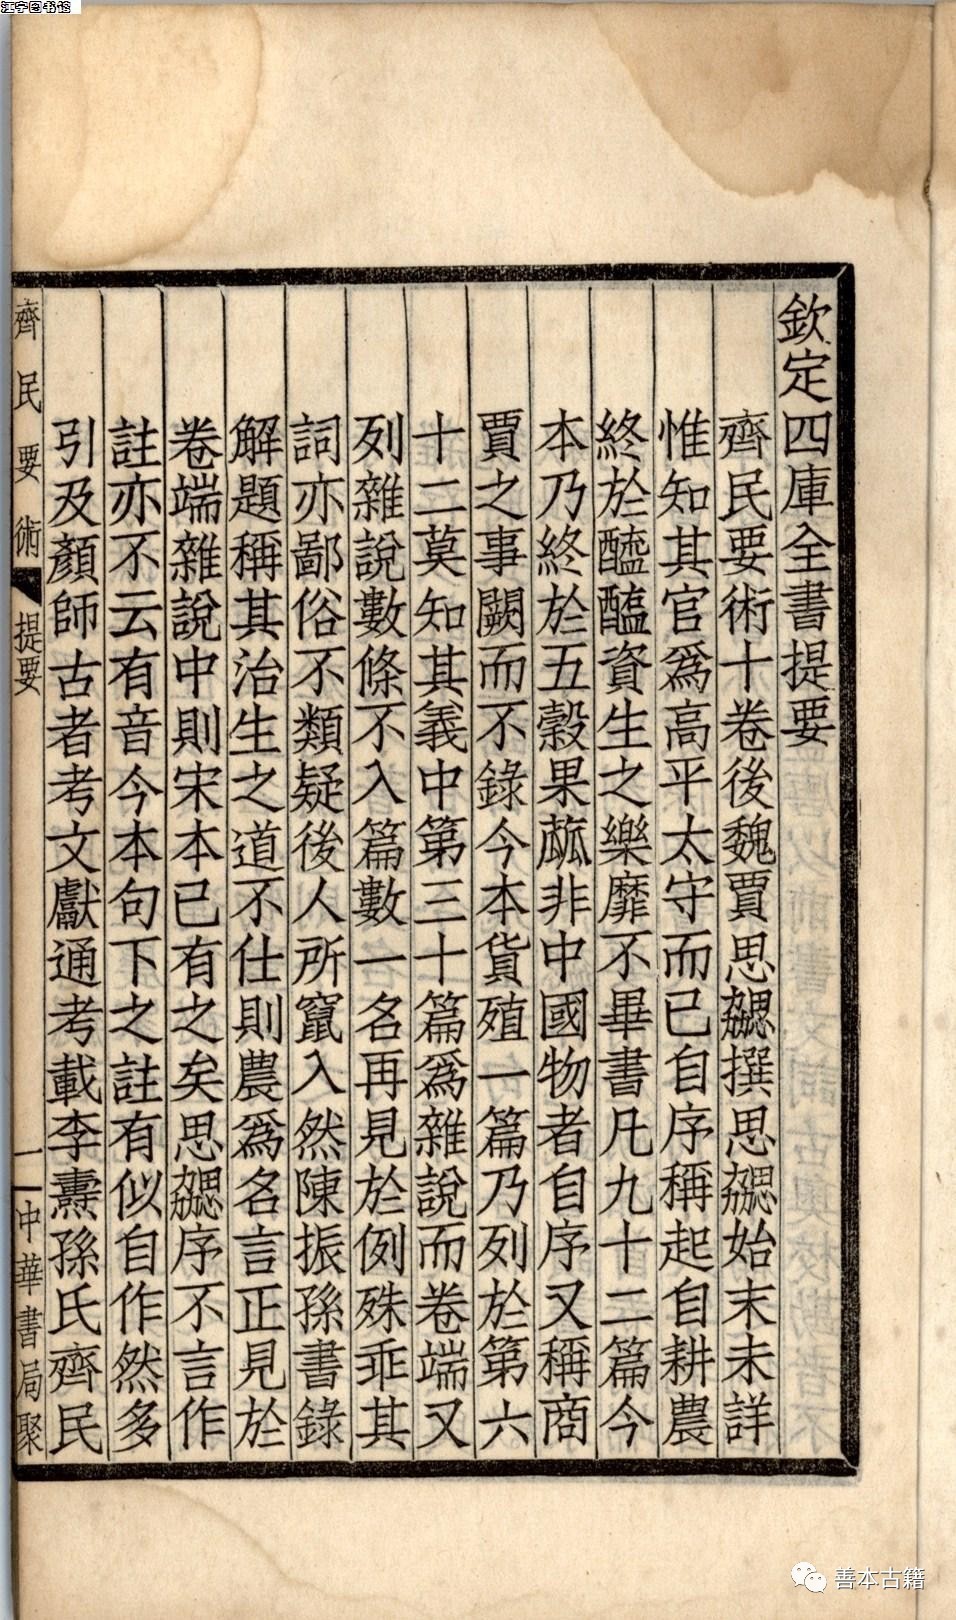 《齐民要术》是北魏贾思勰所著的一部综合性农书,也是世界农学史上